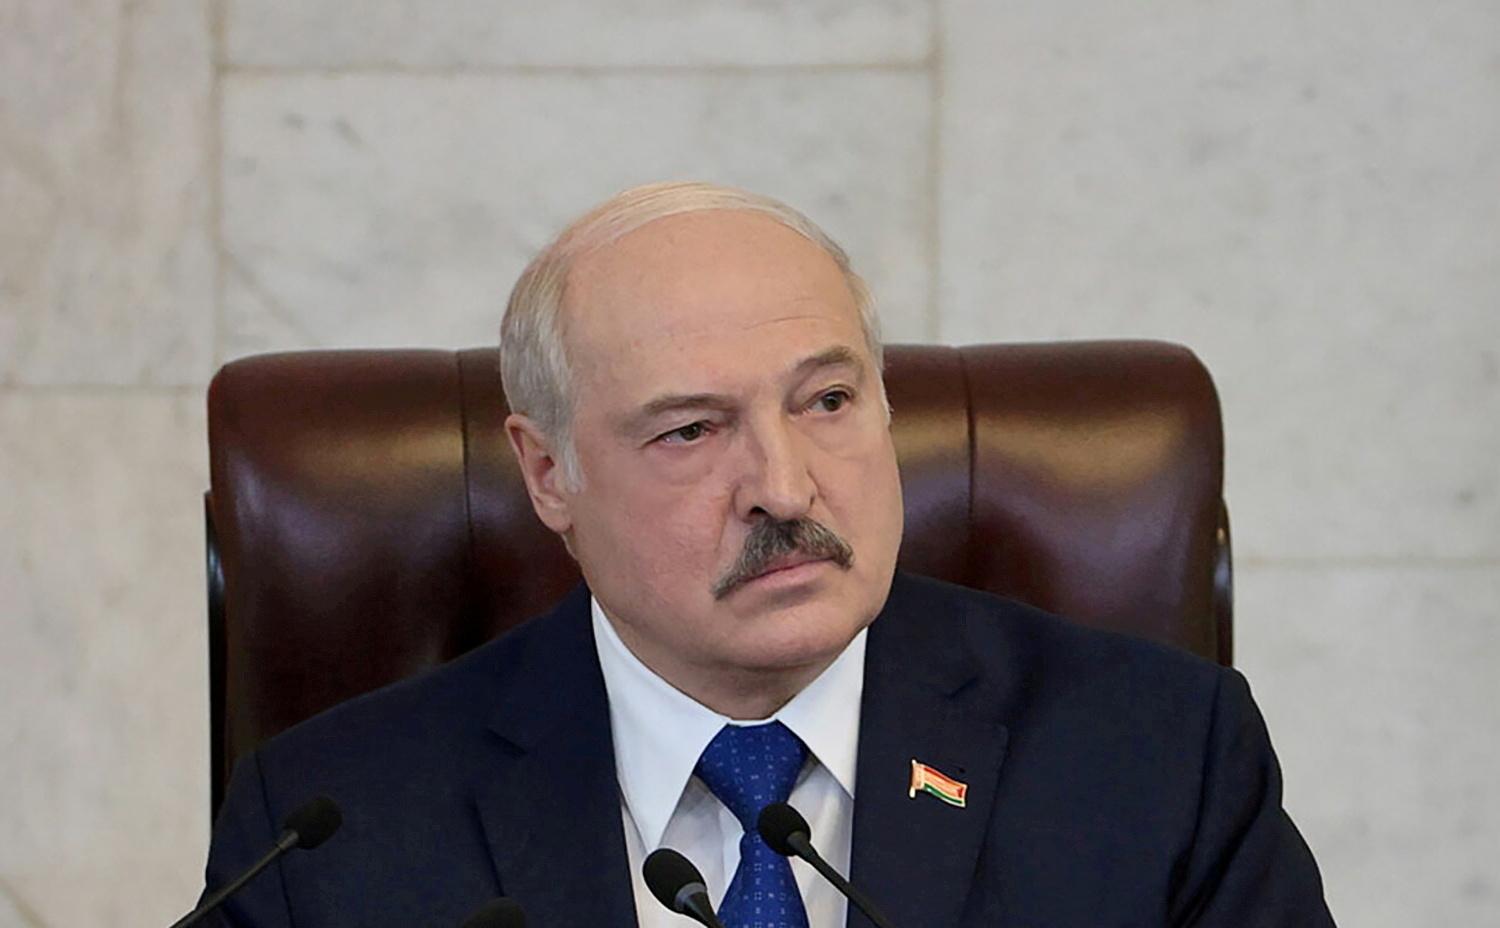 Belarusian President Alexander Lukashenko delivers a speech in Minsk, Belarus May 26, 2021.